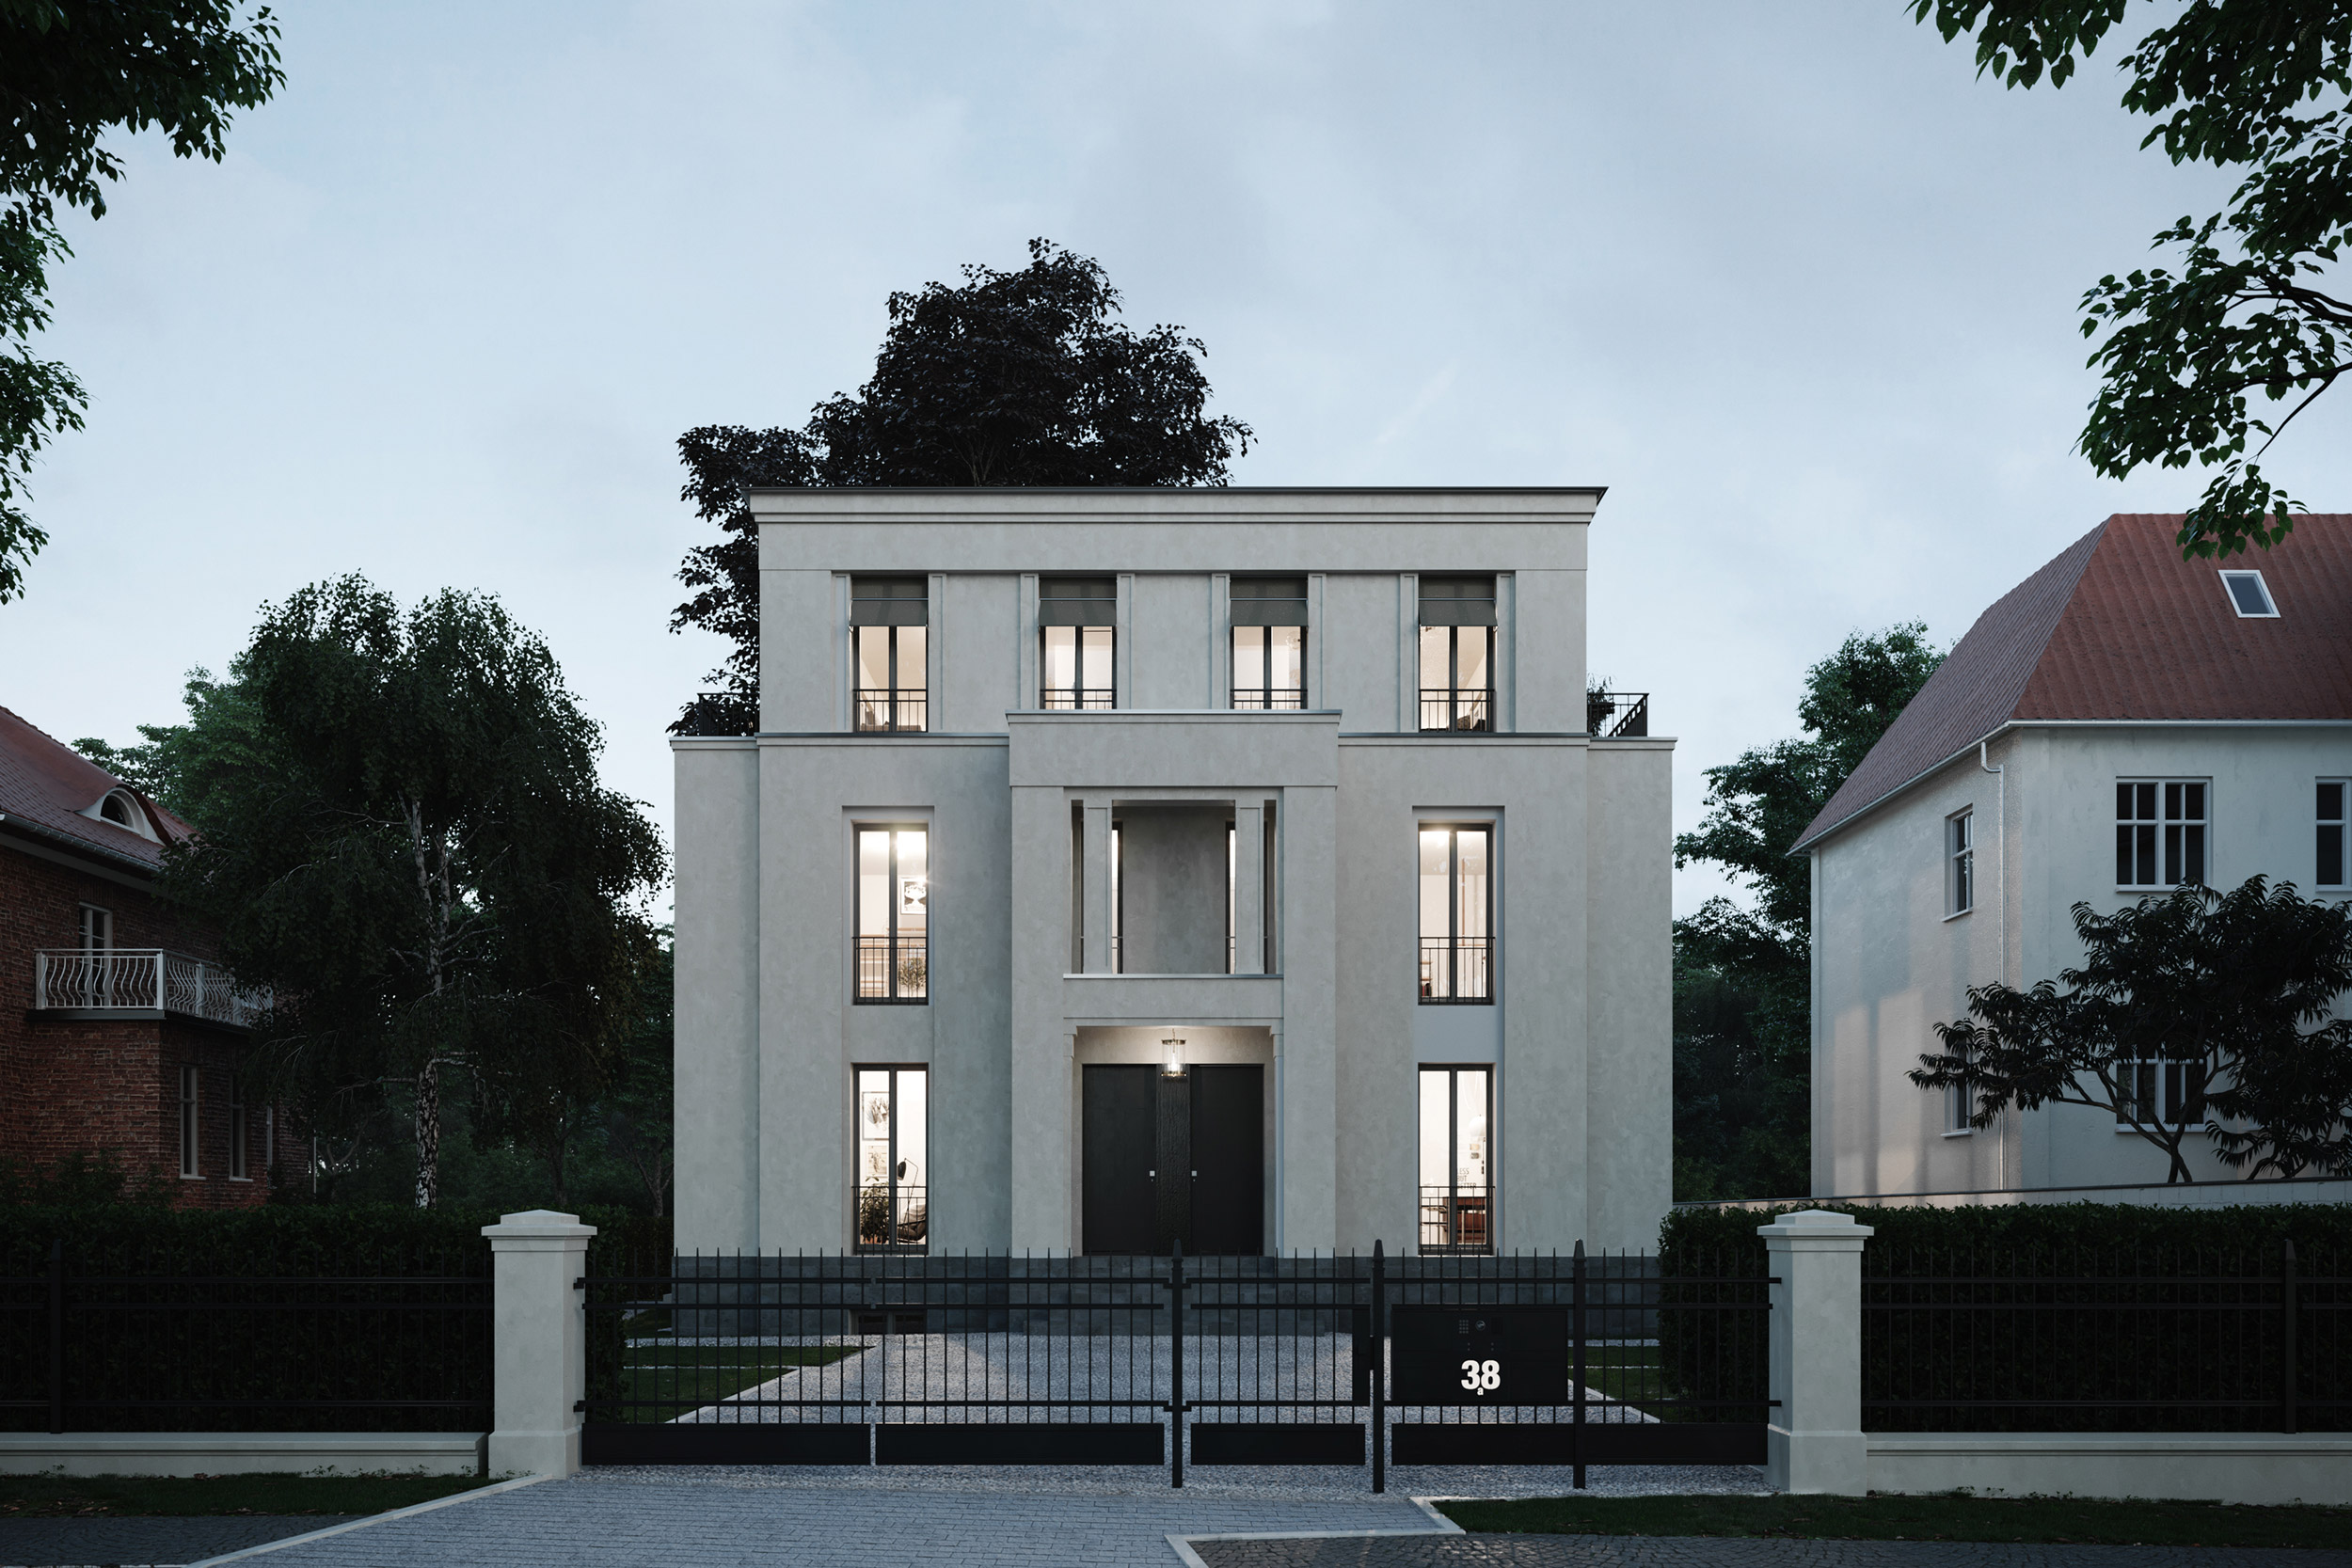 Podbielski 38 - Klassische Stadtvilla mit modernen Eigentumswohnungen in Berlin-Dahlem - Straßenansicht am Abend